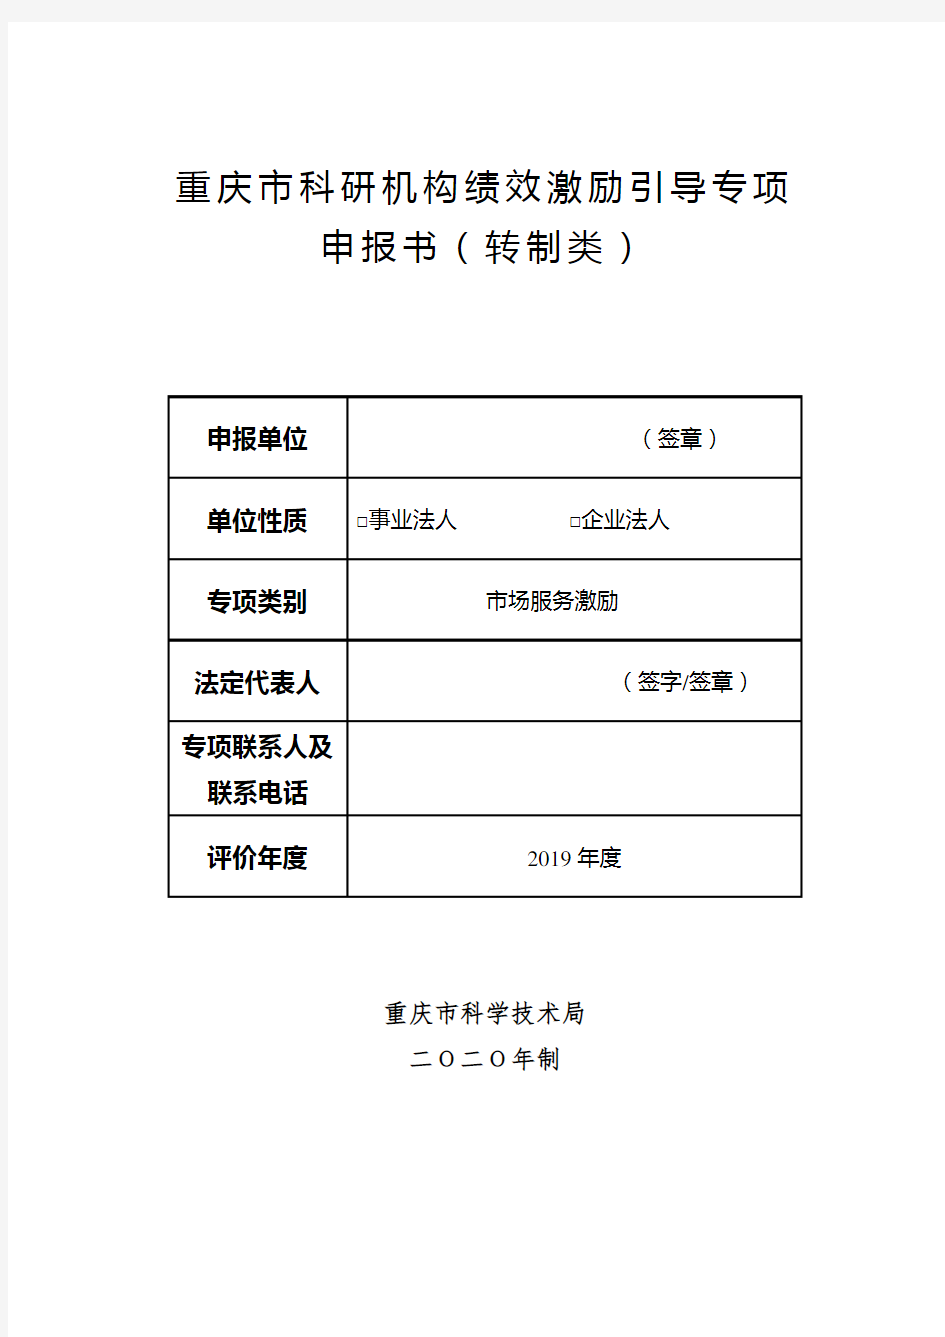 重庆市科研机构绩效激励引导专项申报书(转制类)